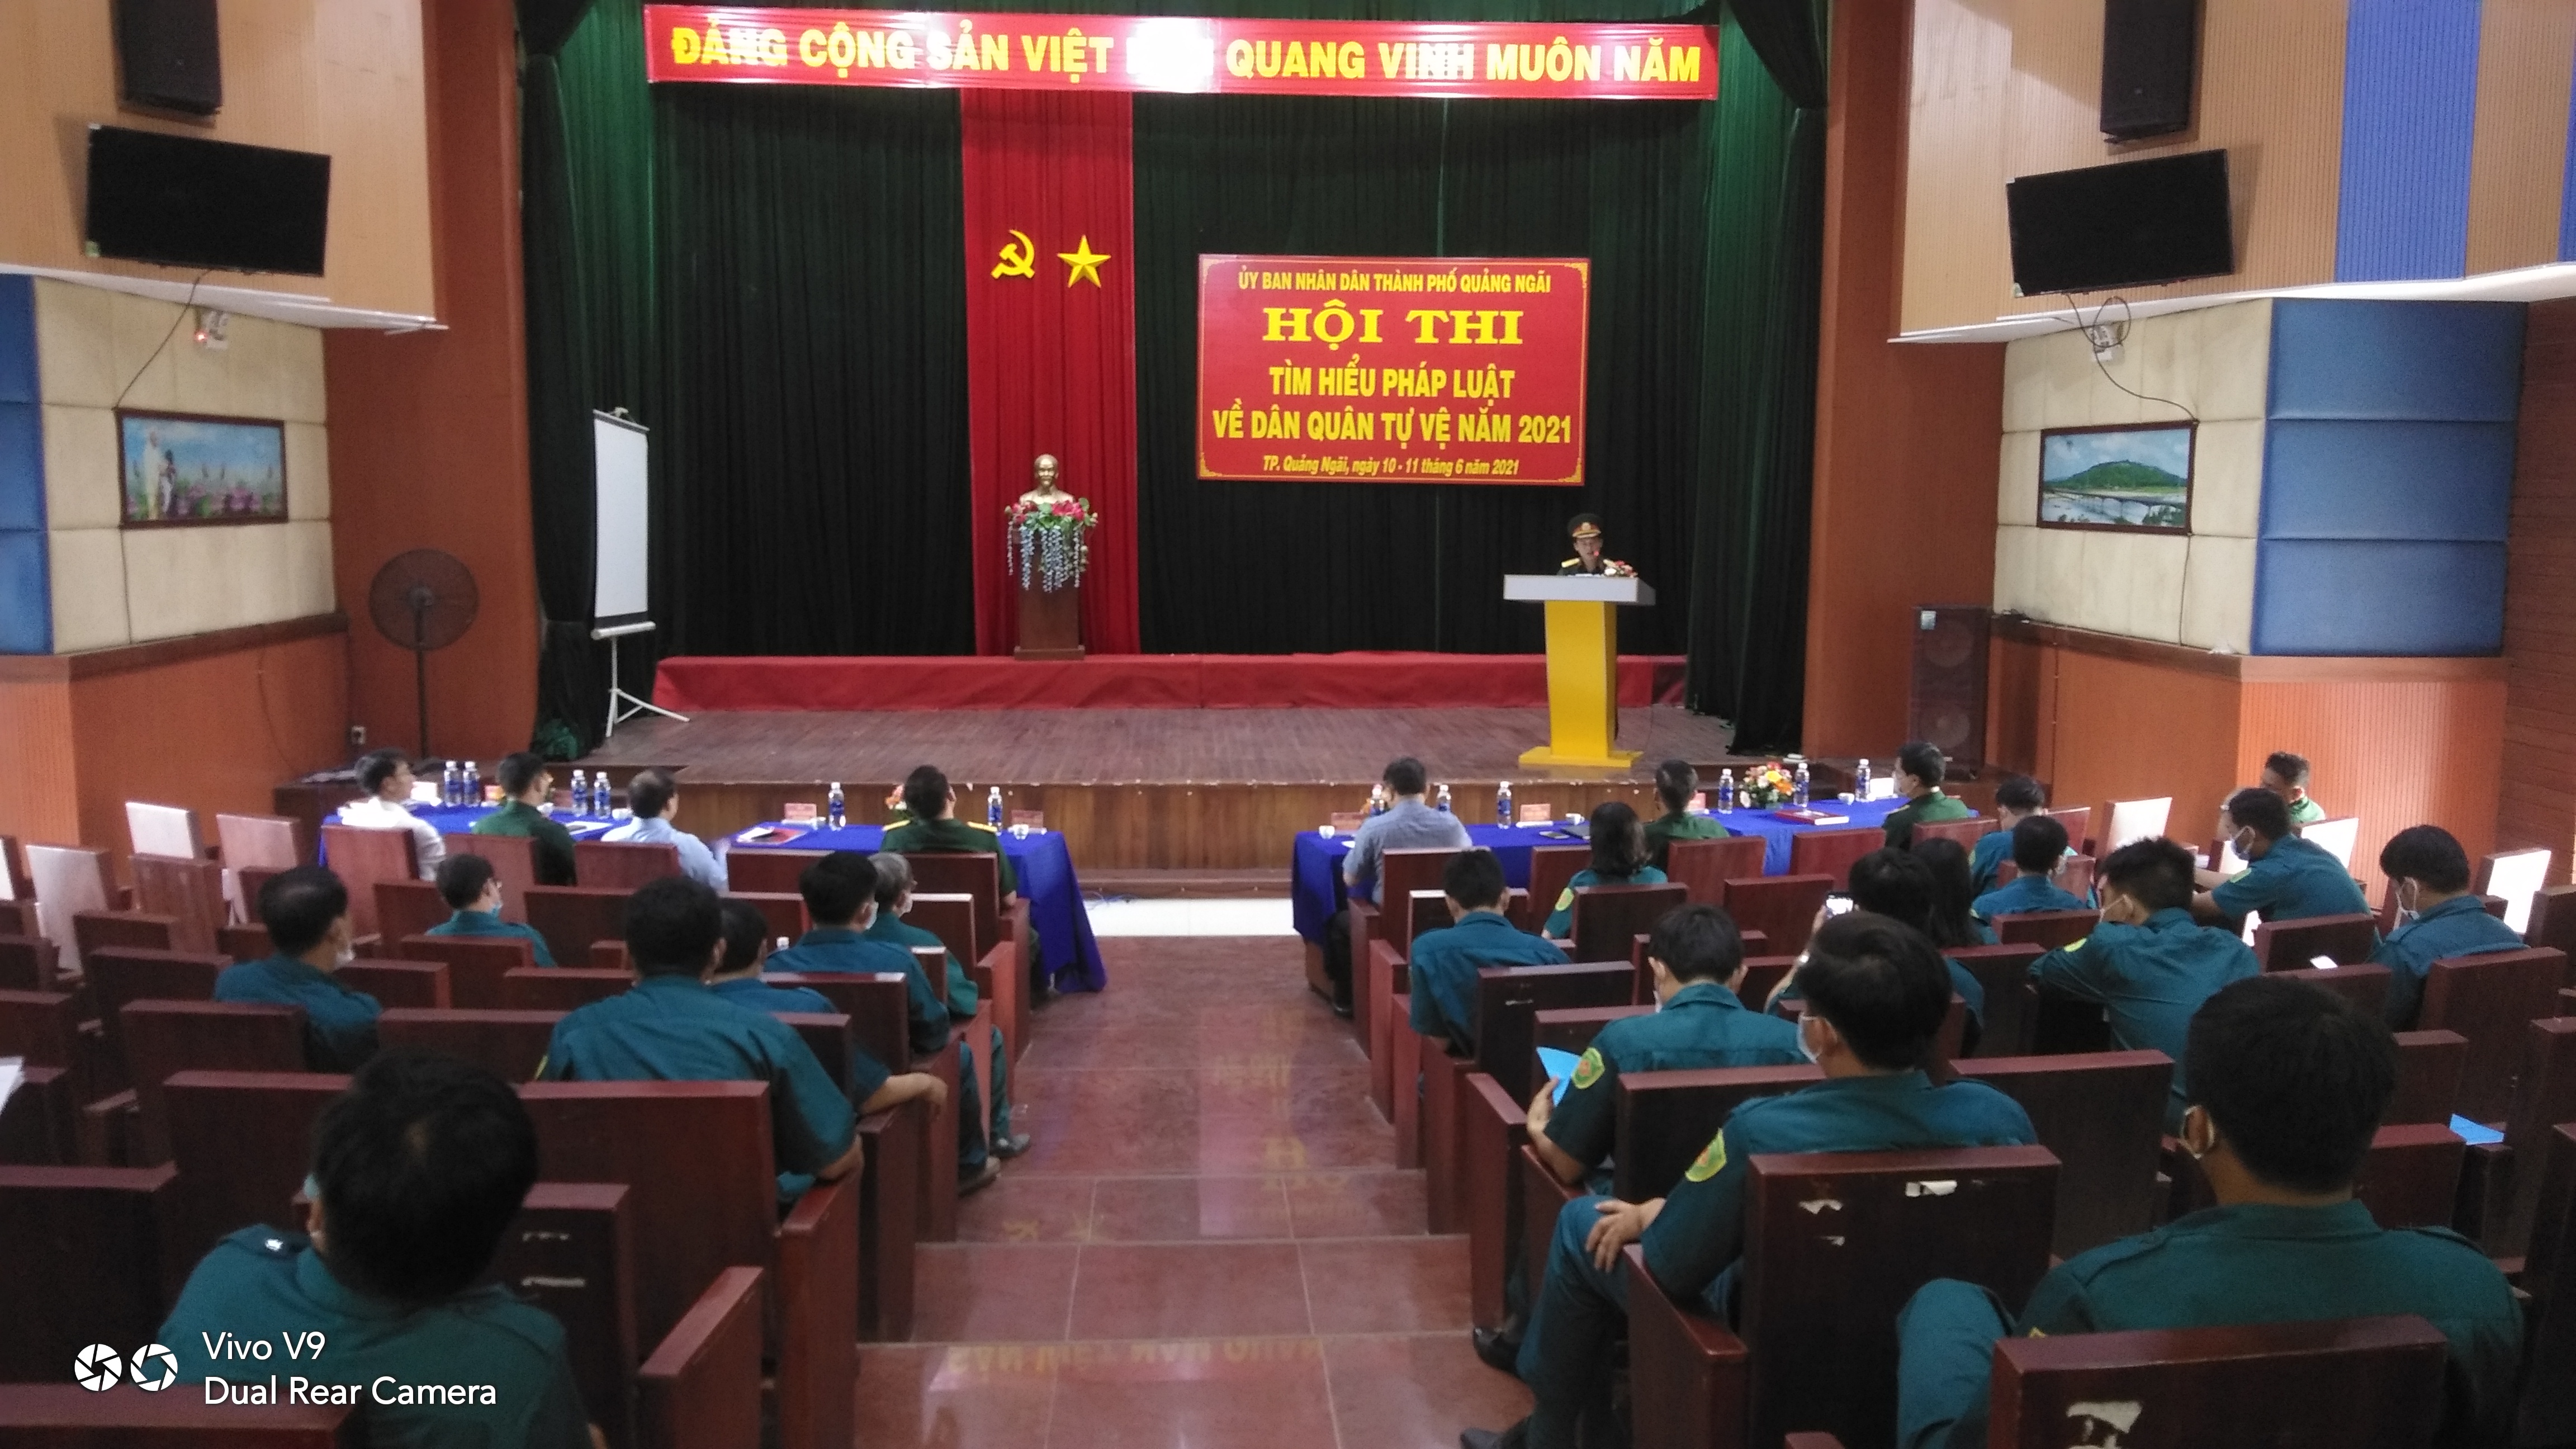 UBND thành phố Quảng Ngãi tổ chức Hội thi tìm hiểu pháp luật về Dân quân tự vệ năm 2021